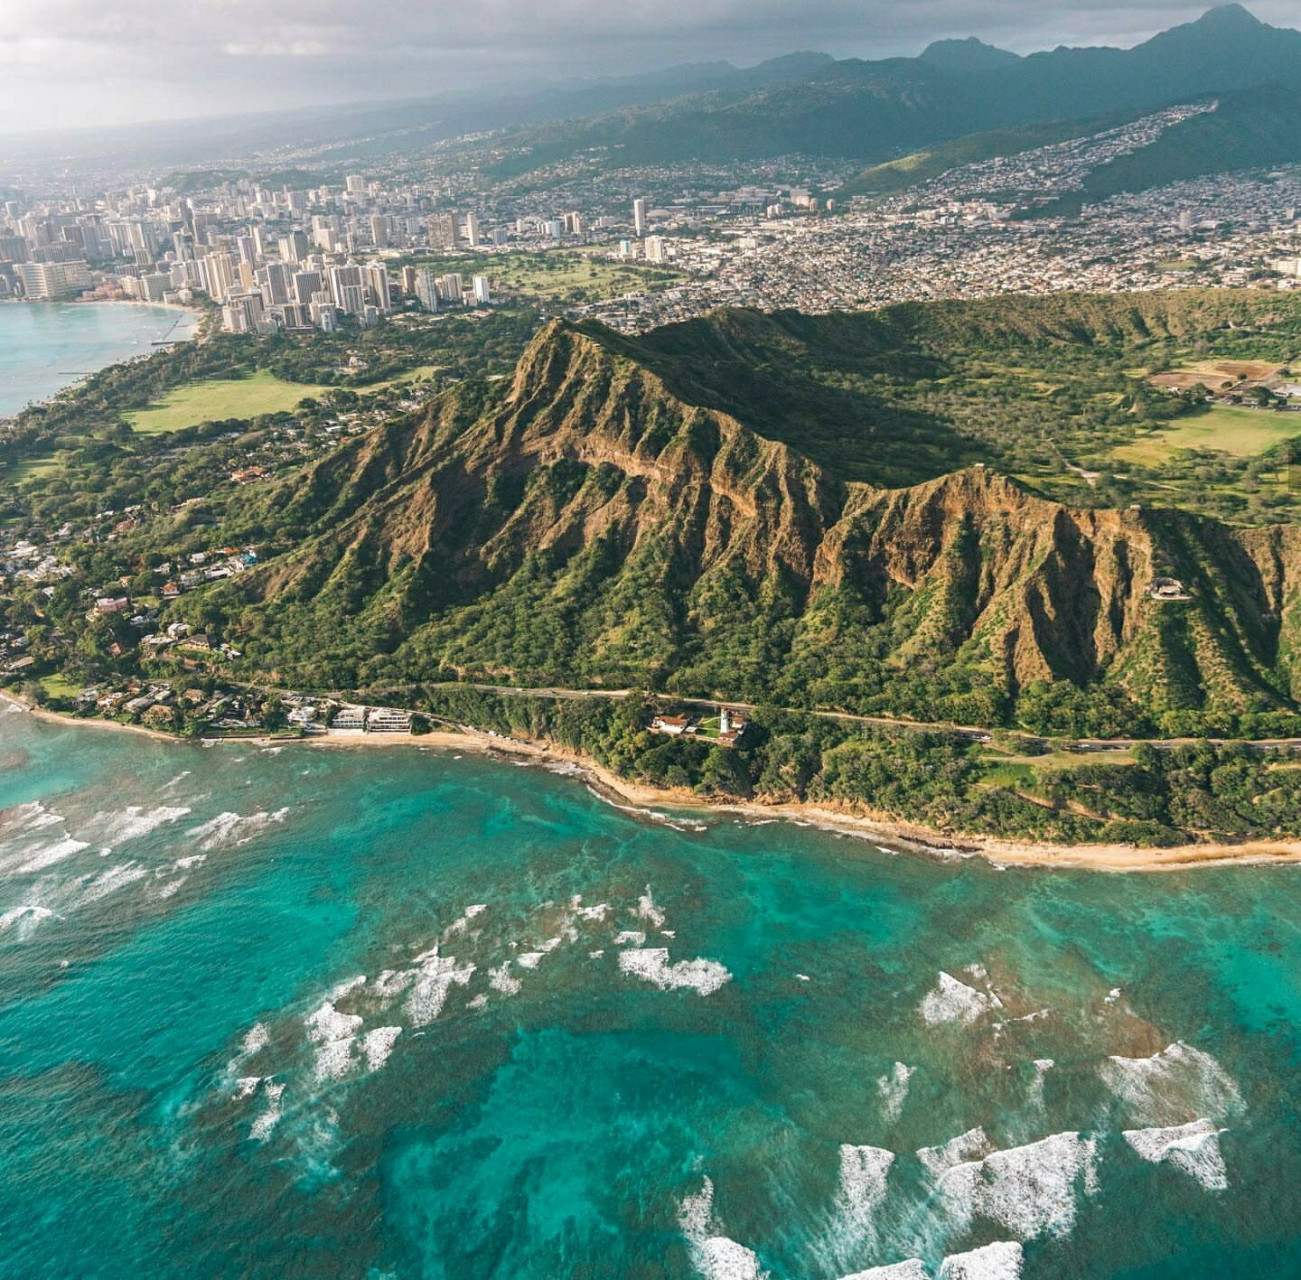 夏威夷岛 夏威夷岛是北太平洋夏威夷群岛中的最大岛,美国夏威夷州的一